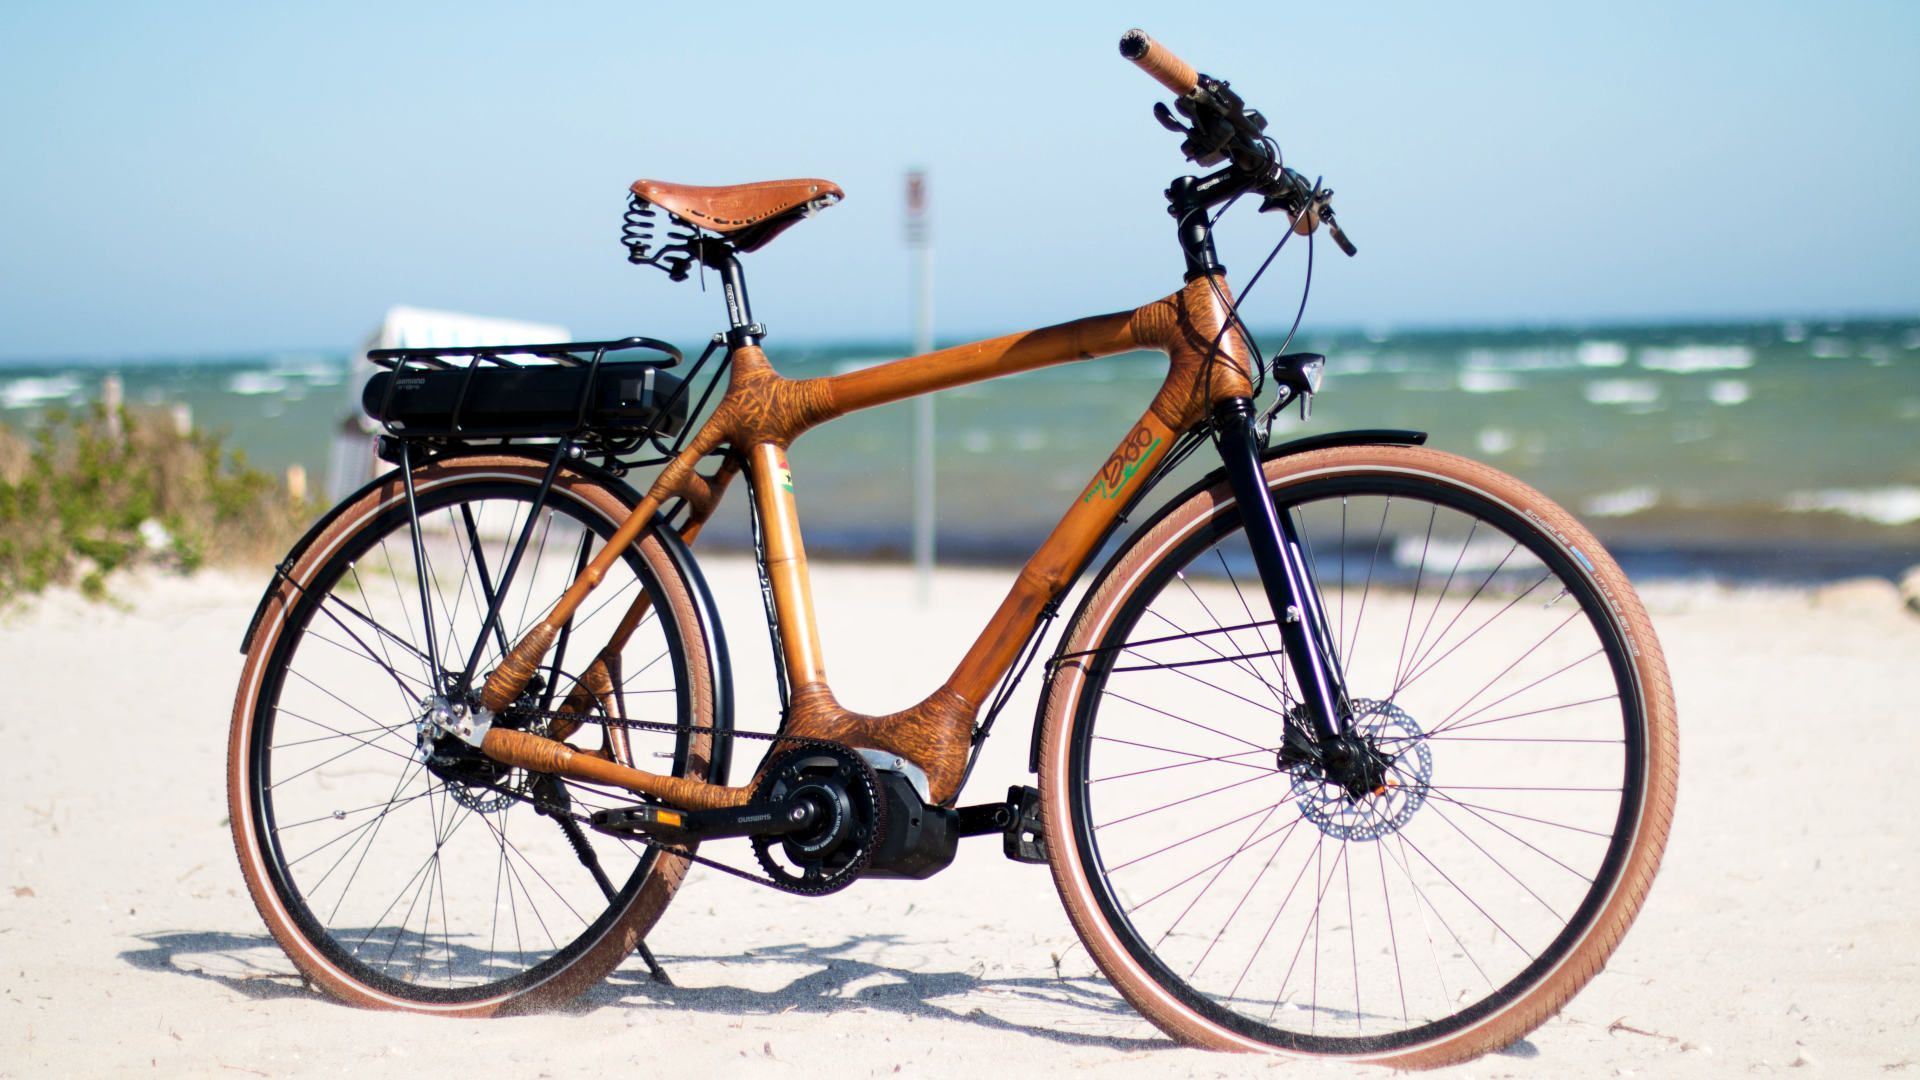 Des vélos en bambou : un projet social et écologique en Belgique